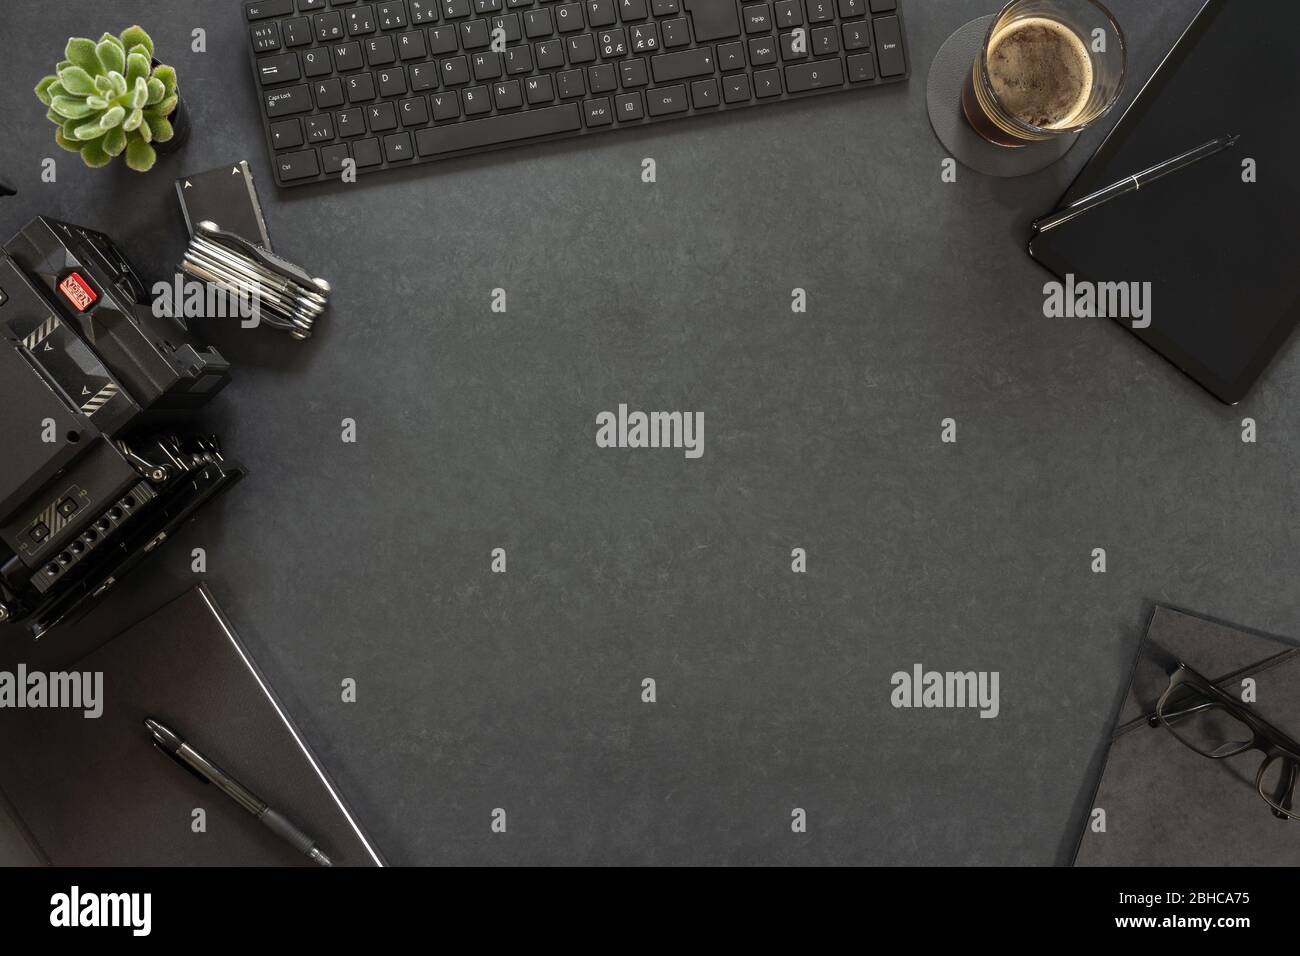 Vista dall'alto della tastiera e del diario con attrezzatura fotografica sul tavolo Foto Stock